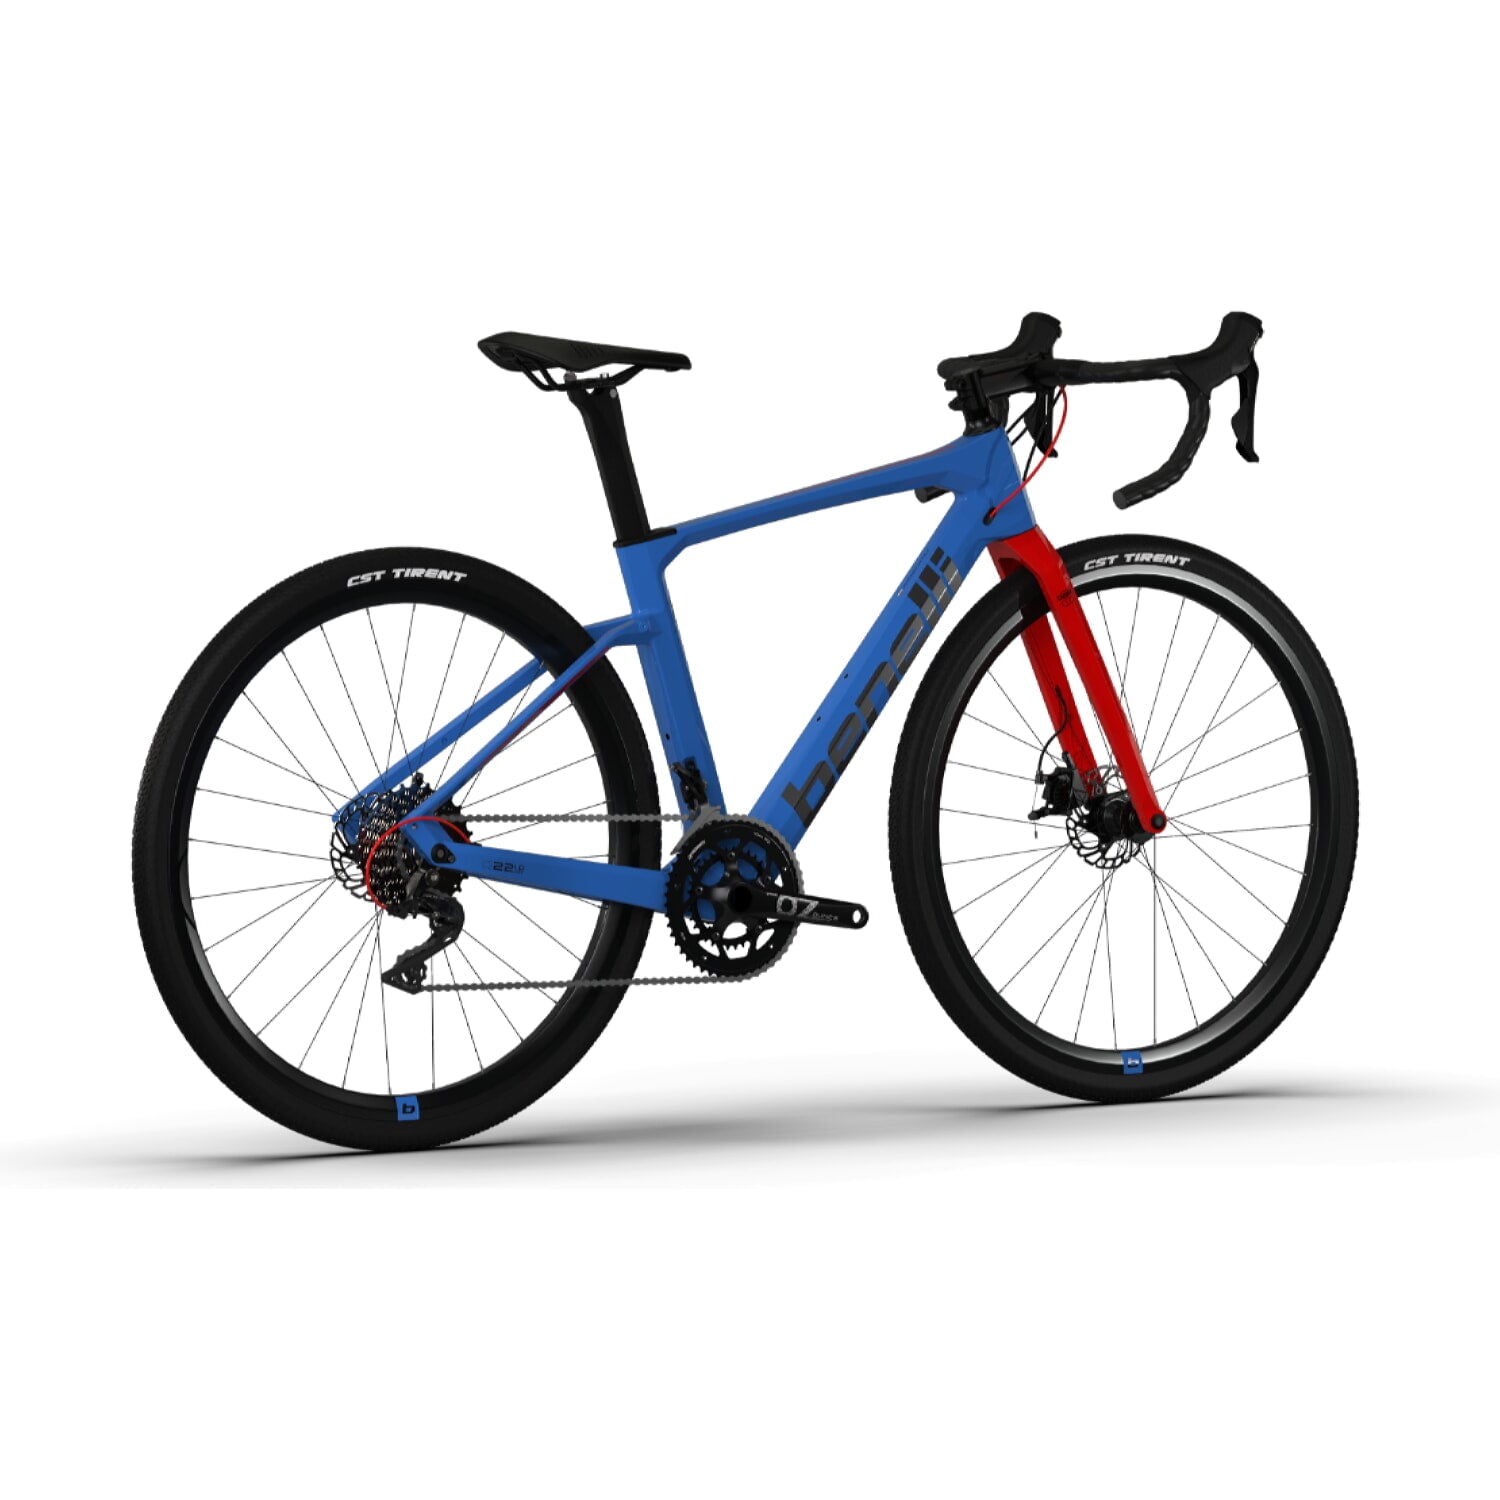 Bicicleta Gravel Benelli Carb. (G22 1.0 Adv Carb) Color Azul/Negro Talla L